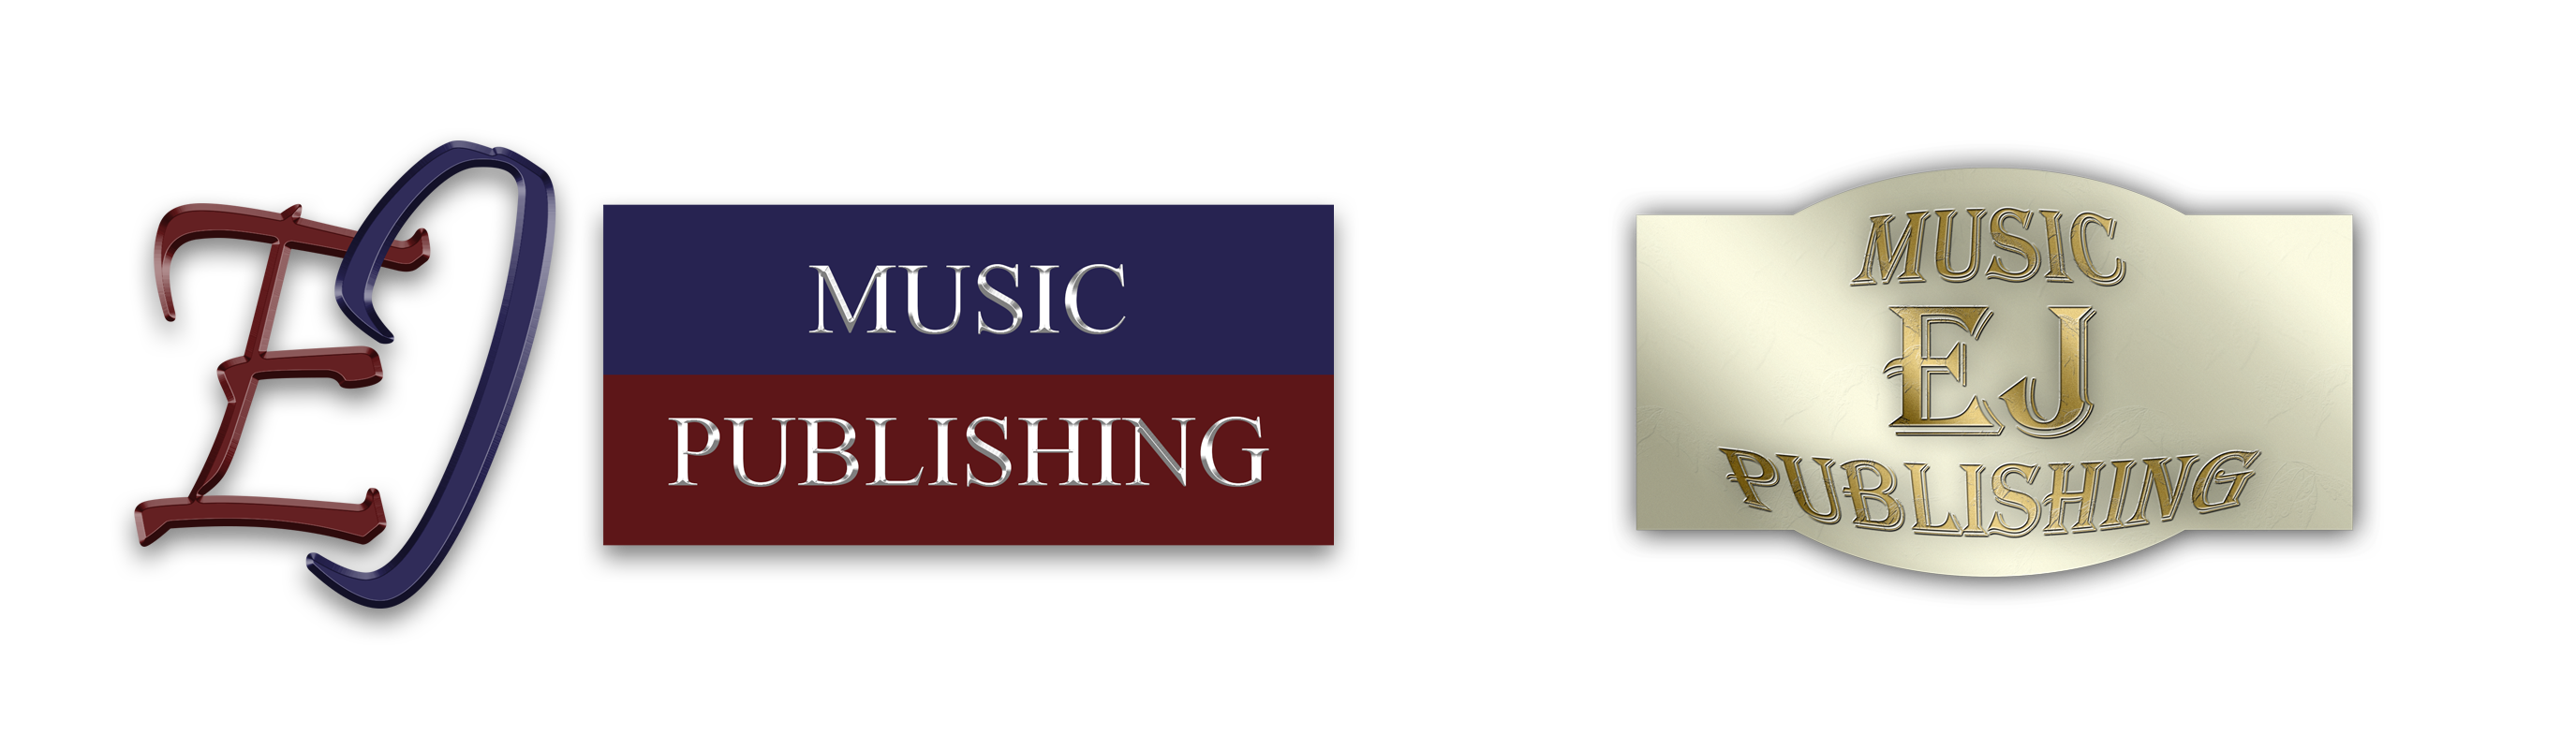 EJ Music Publishing Ltd.